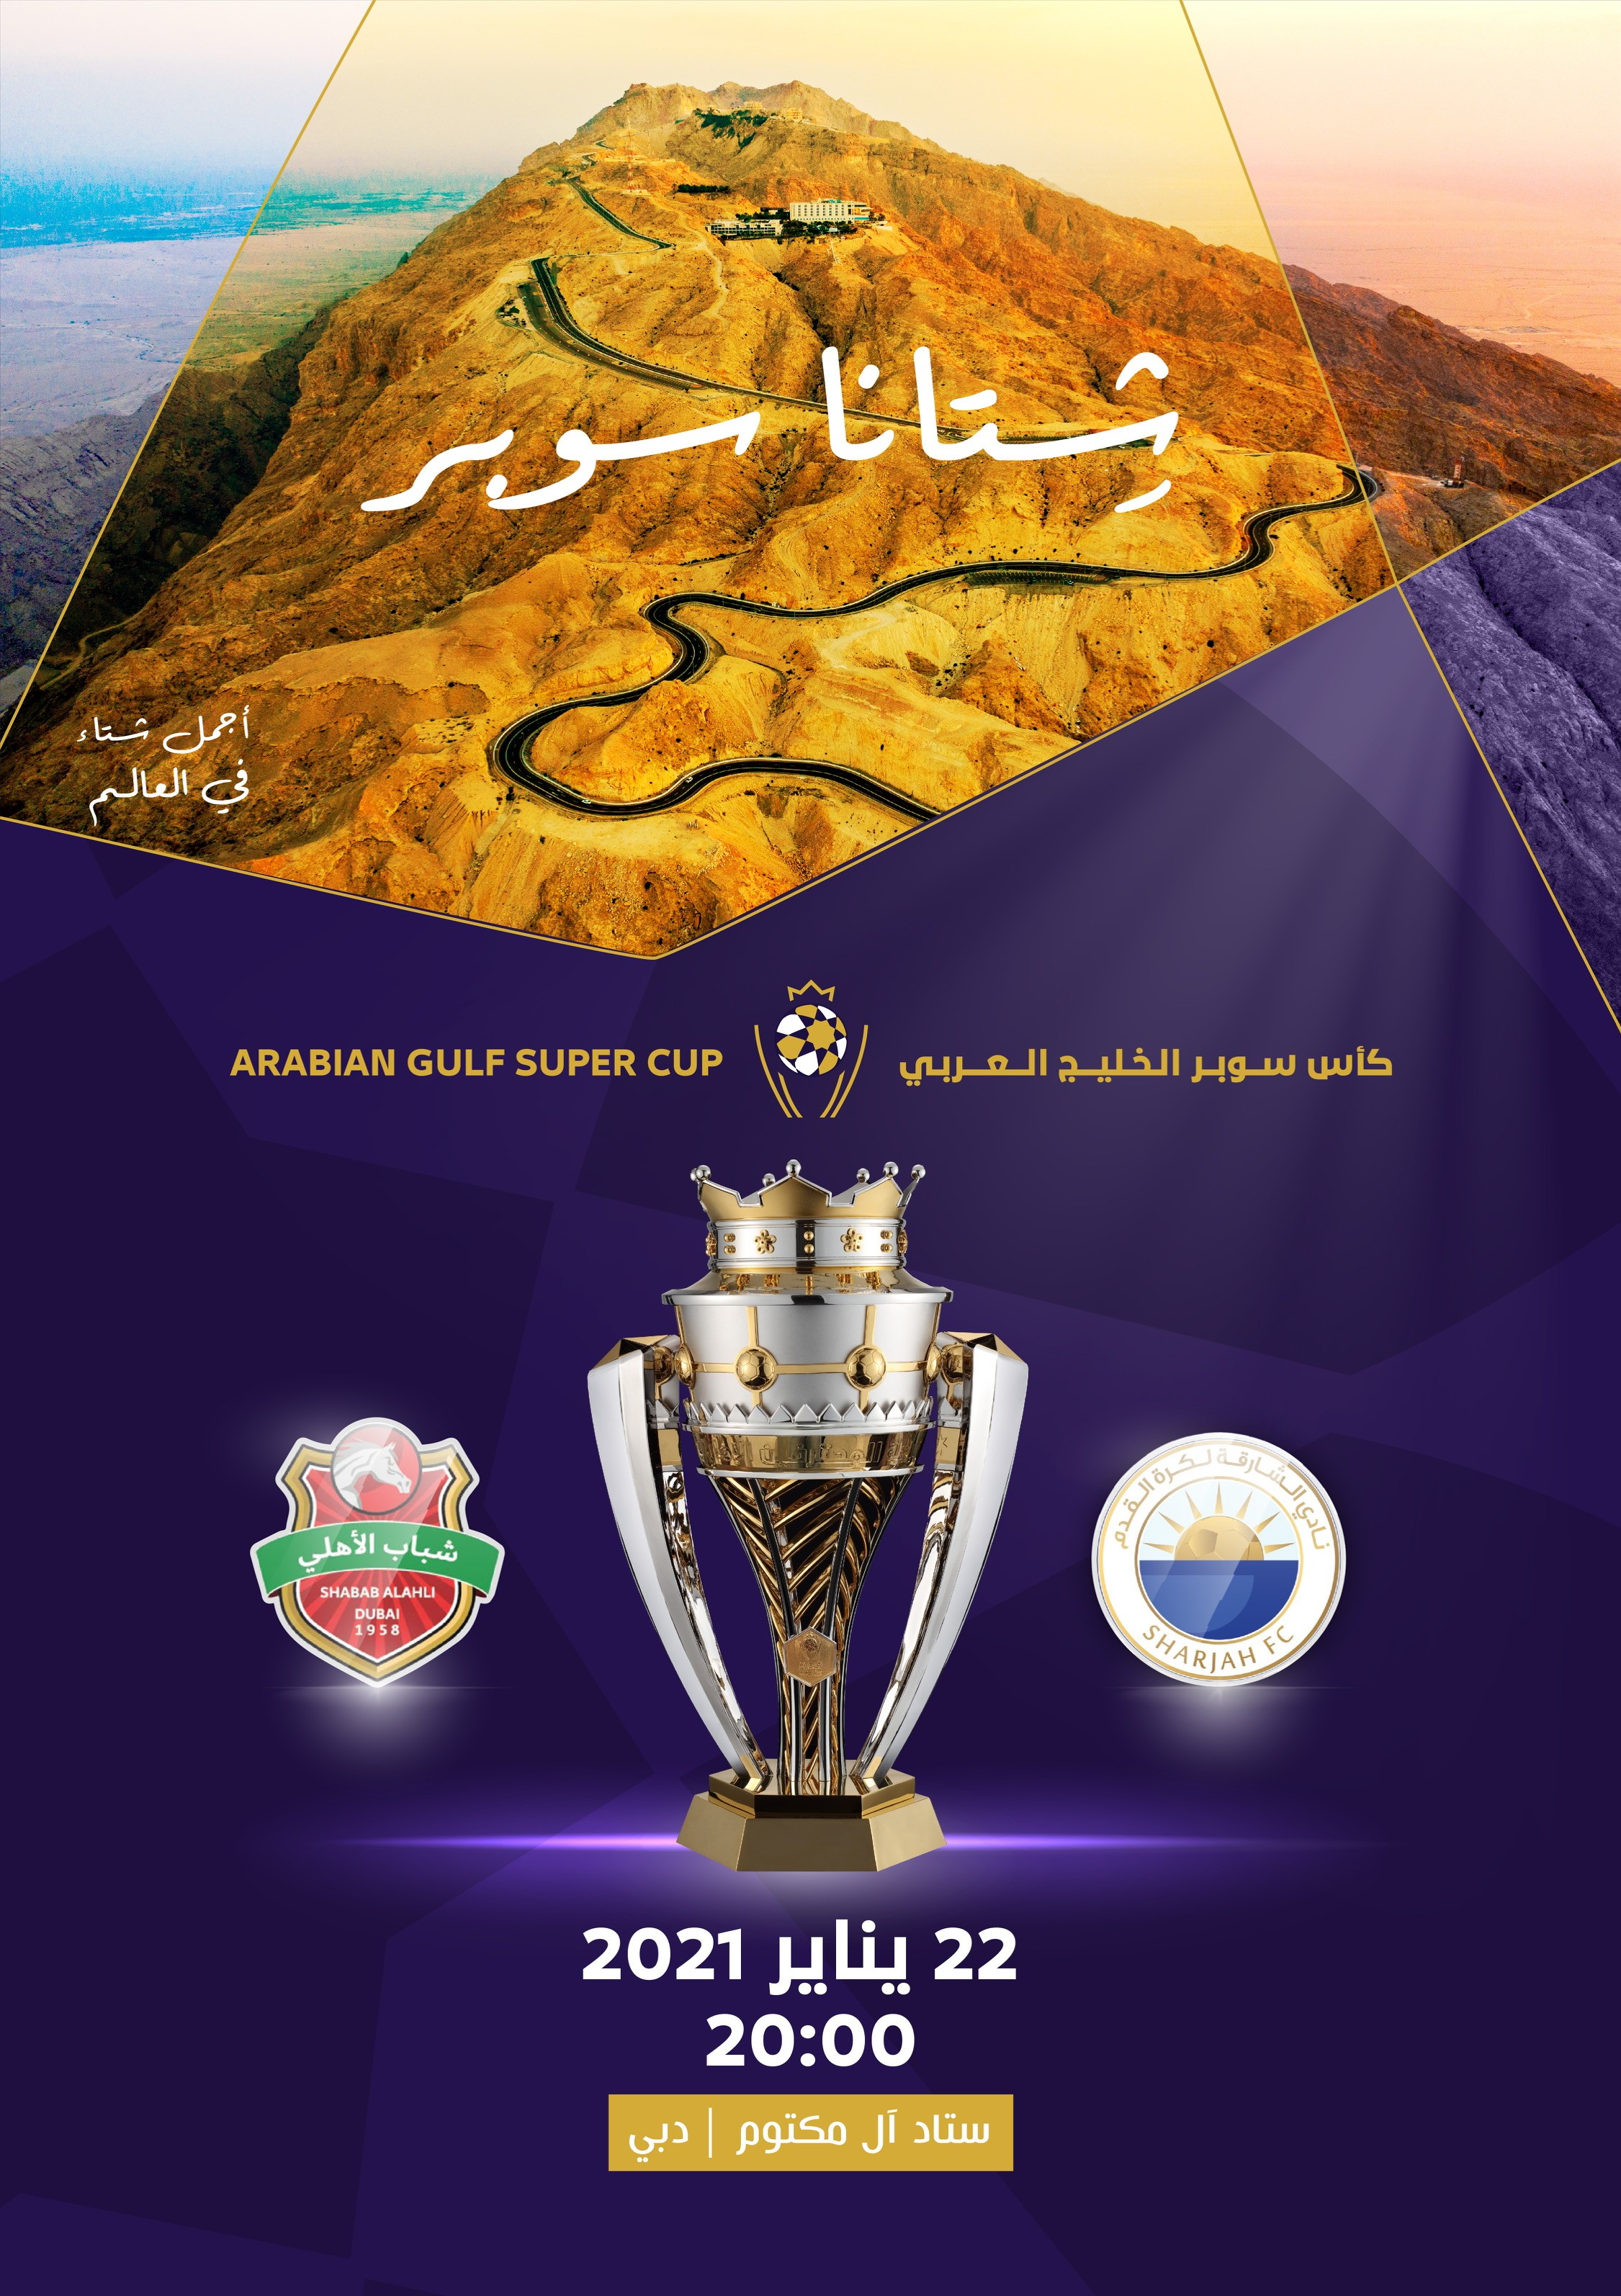 كأس "سوبر الخليج العربي" على استاد آل مكتوم 22 يناير